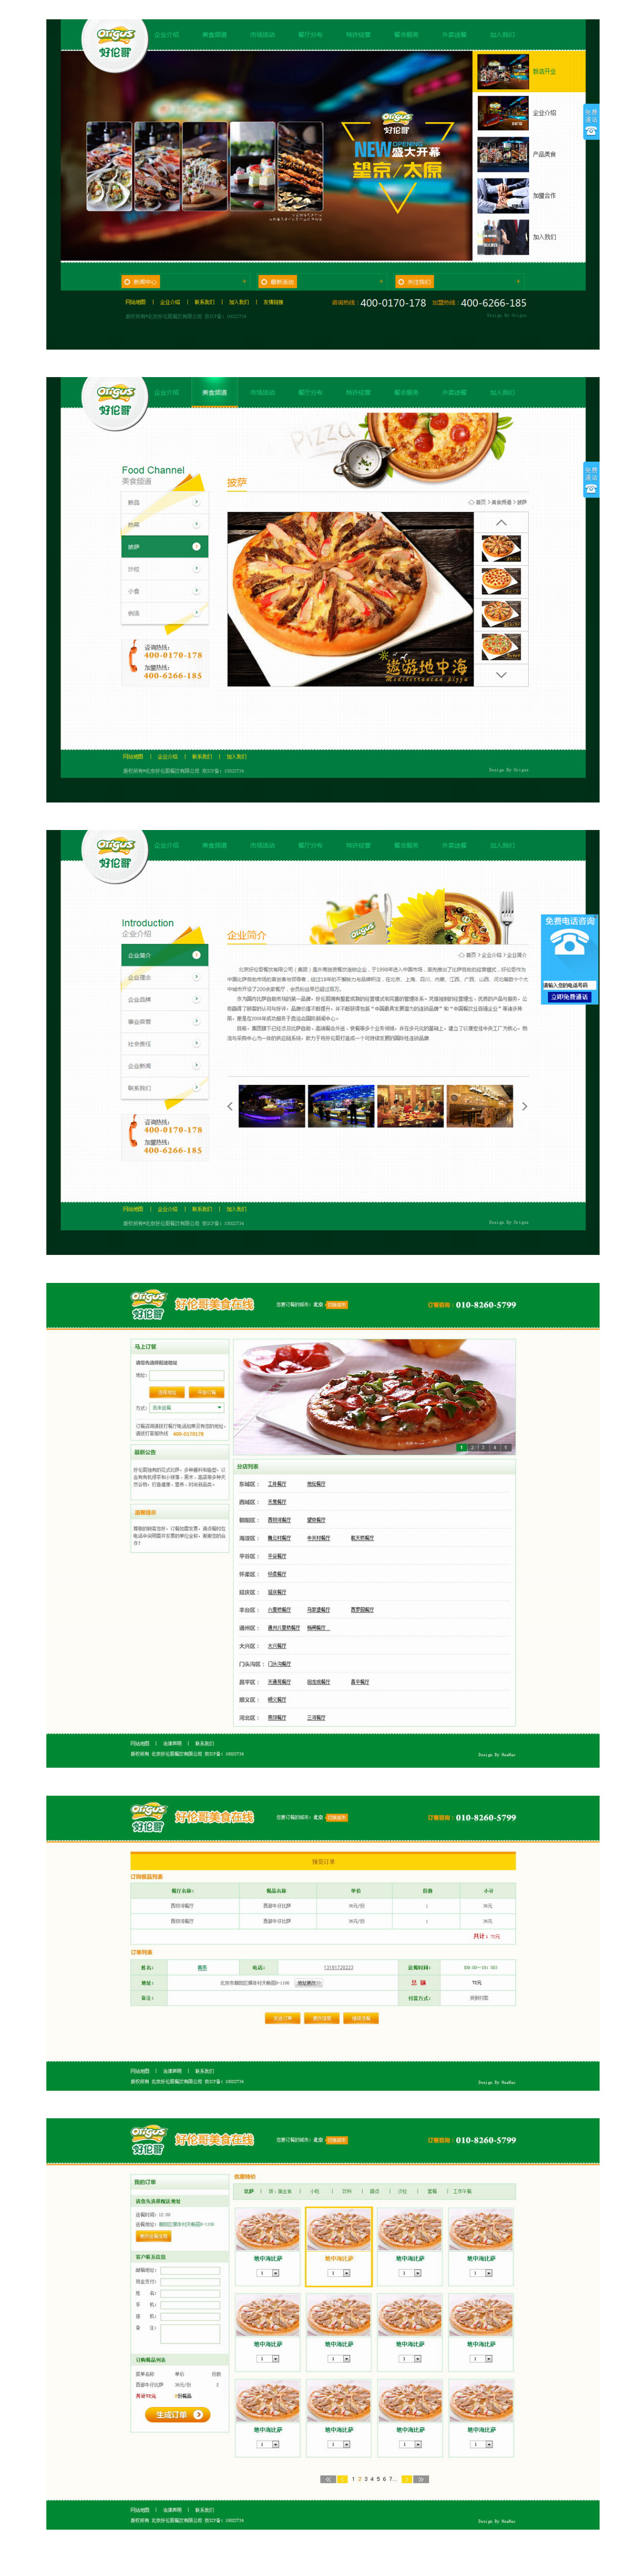 北京好伦哥餐饮有限公司3.jpg